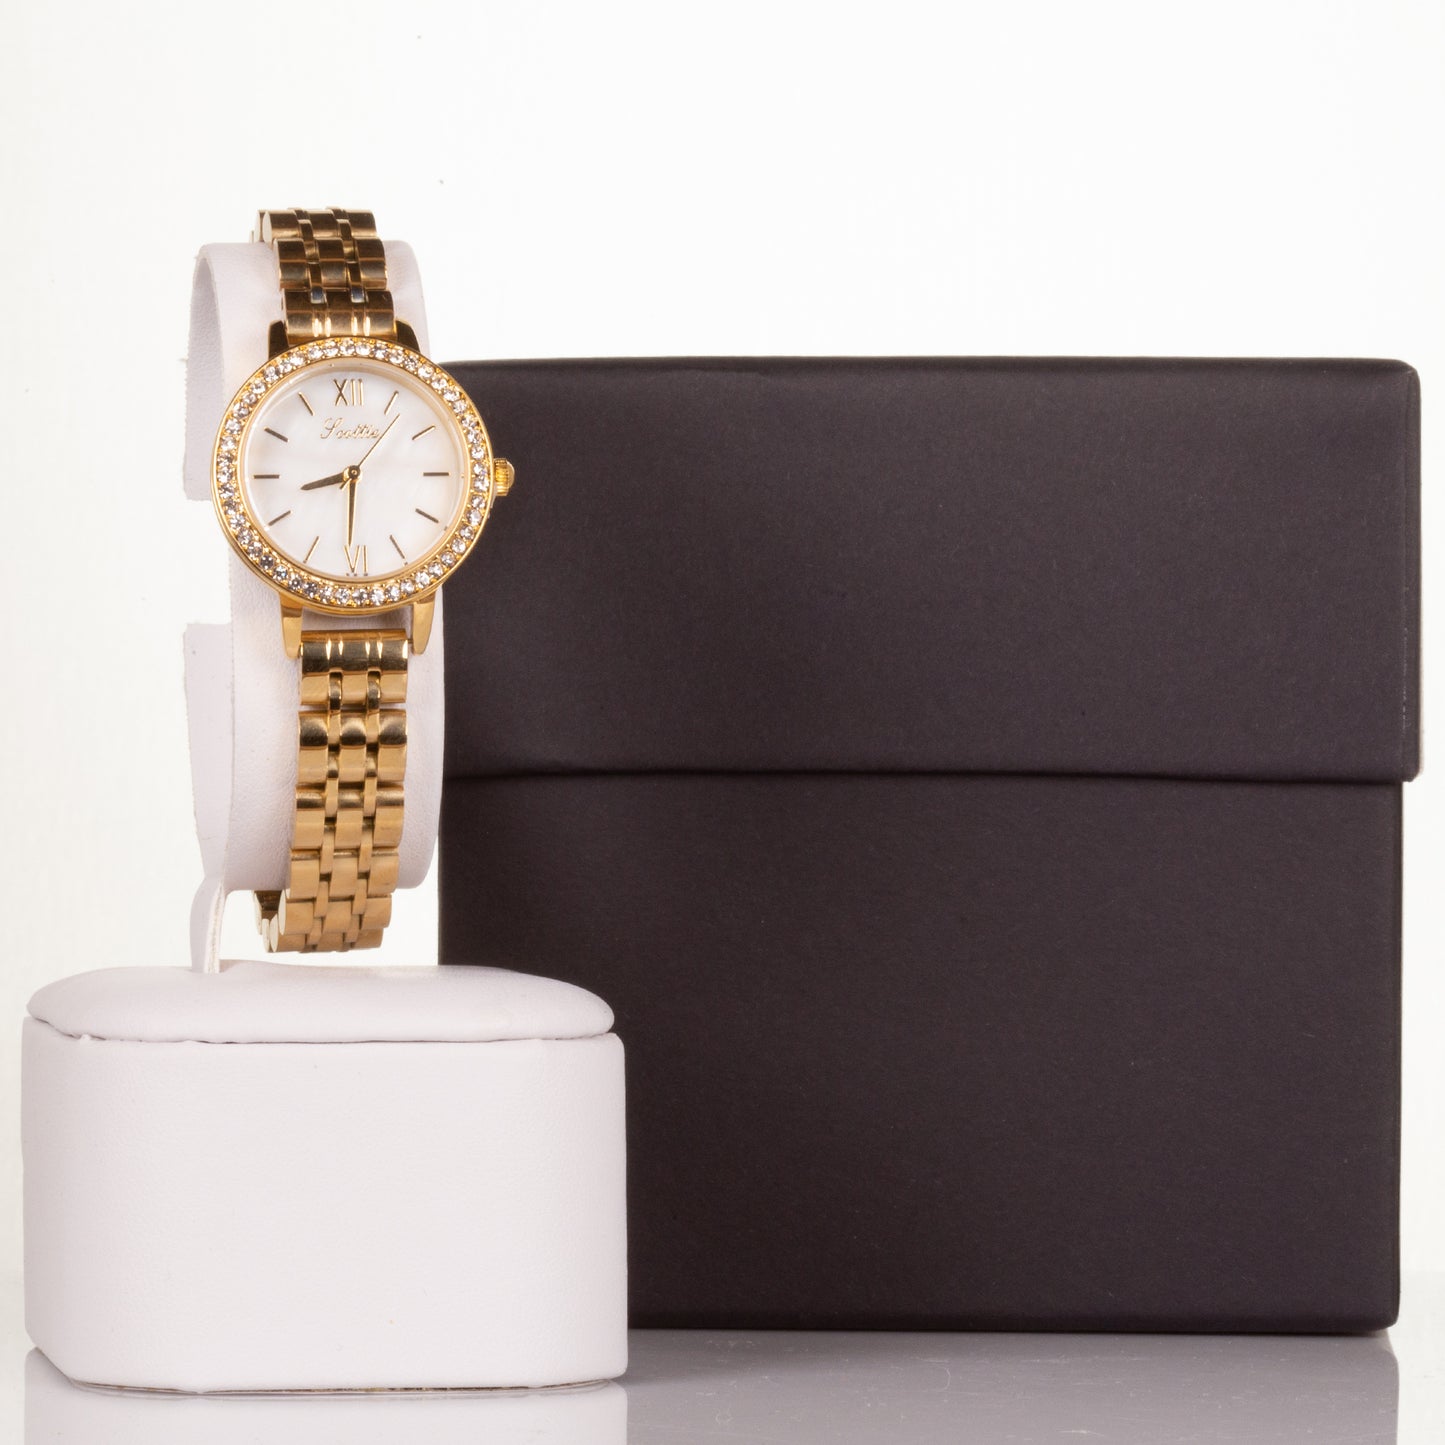 Vysoce kvalitní slitinové hodinky s mechanismem Miyota v dárkové krabičce, Bílý ciferník